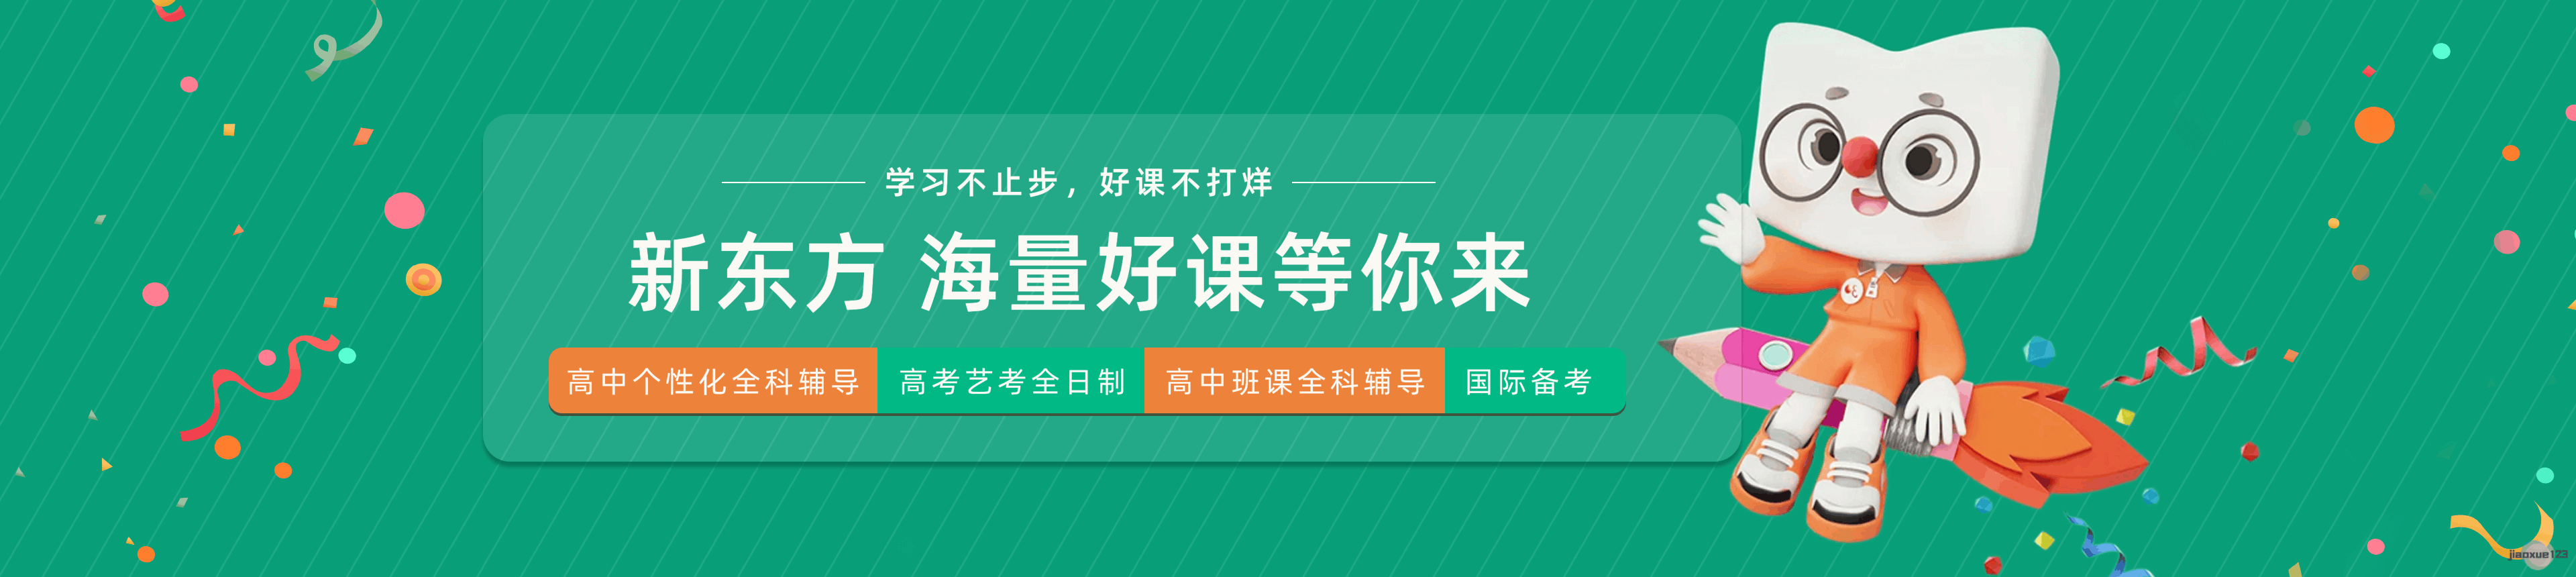 深圳新东方素质教育4